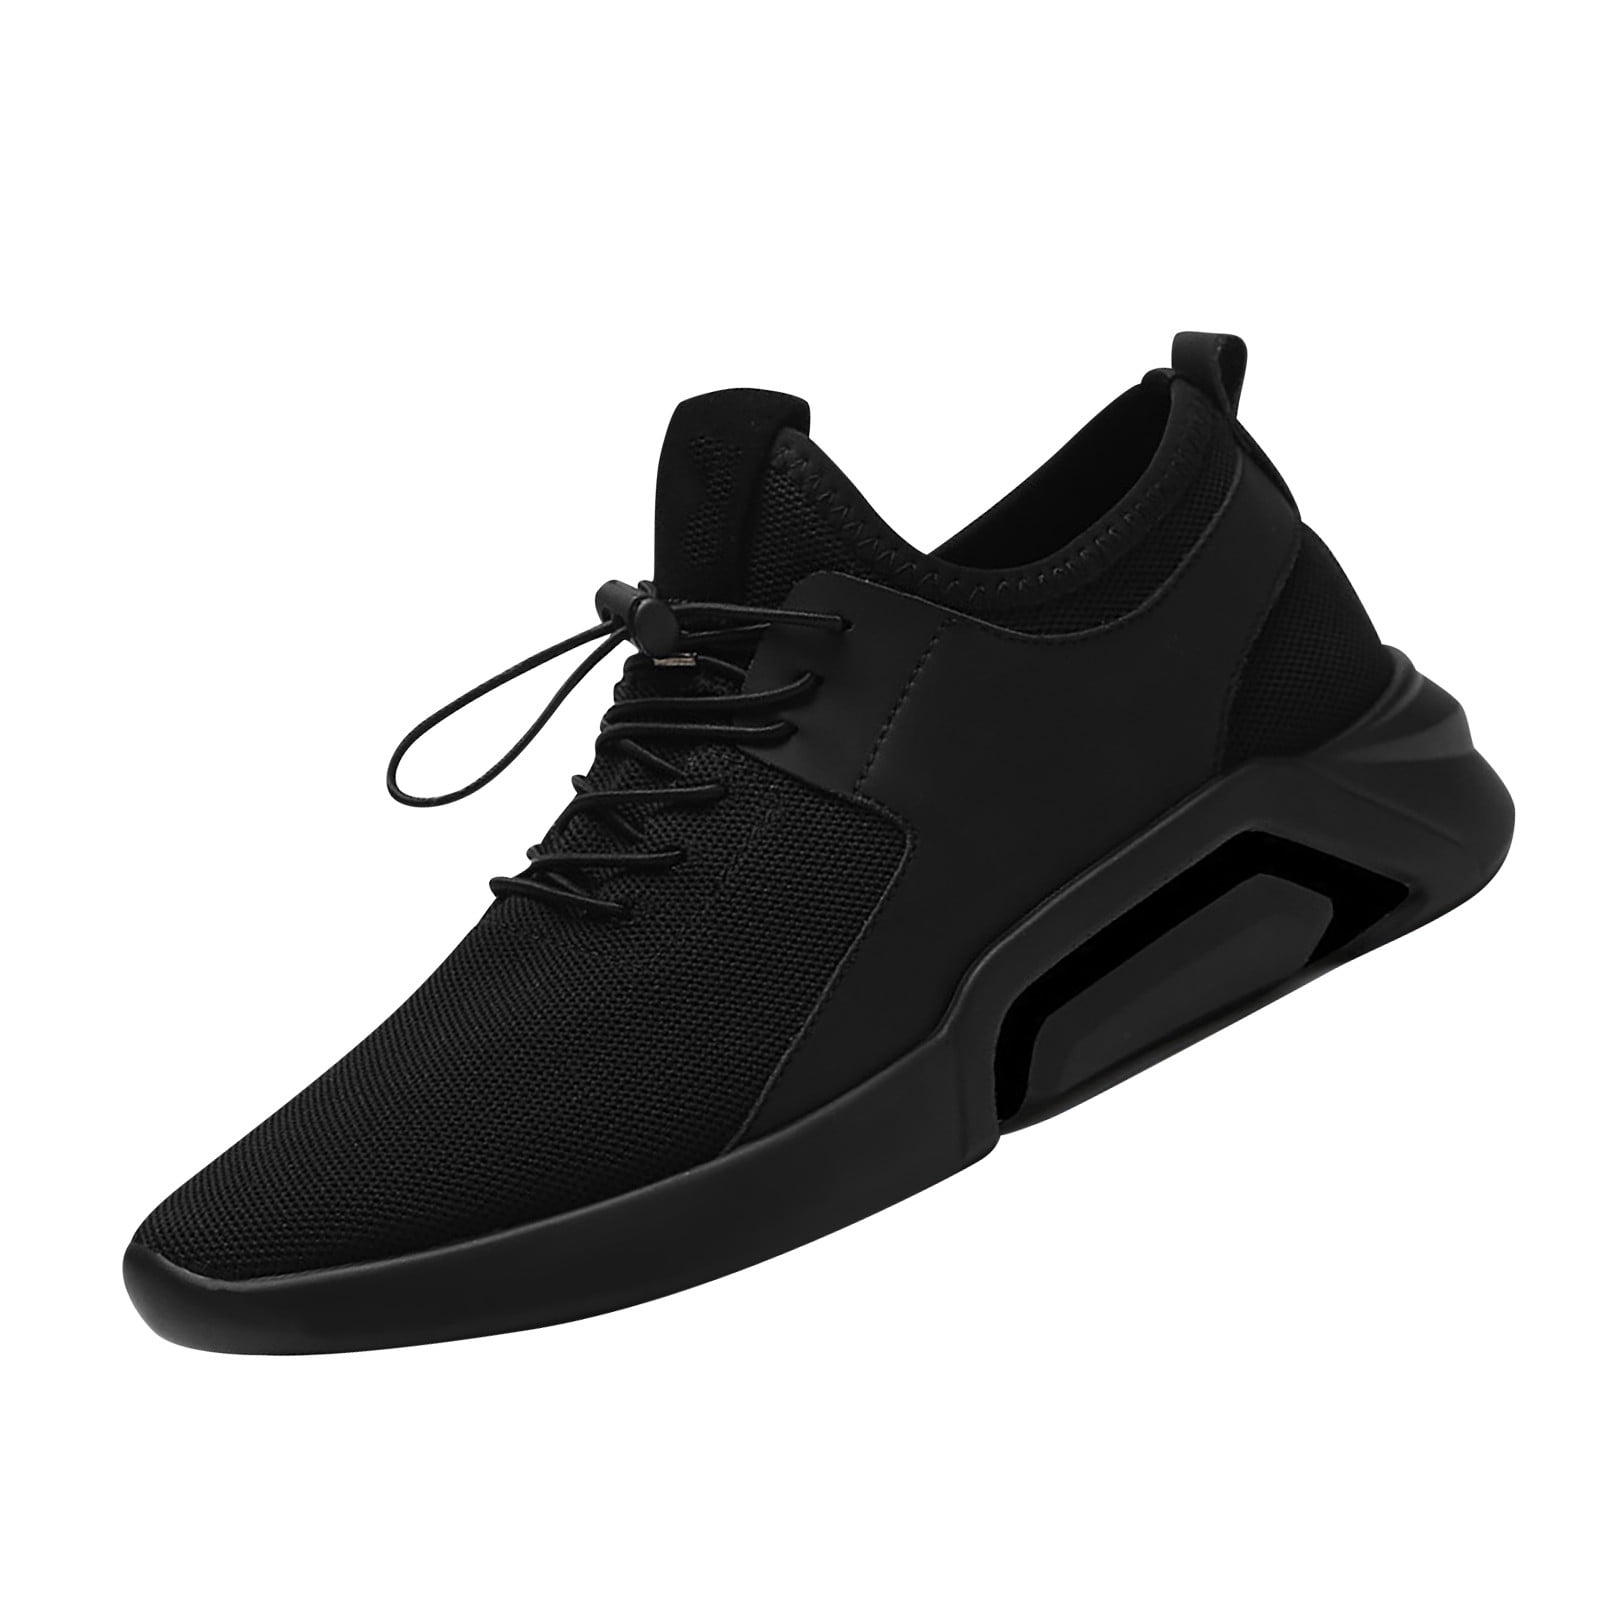 asdoklhq Casual Shoes for Men Under $25,Men's Business Shoes Breathable ...